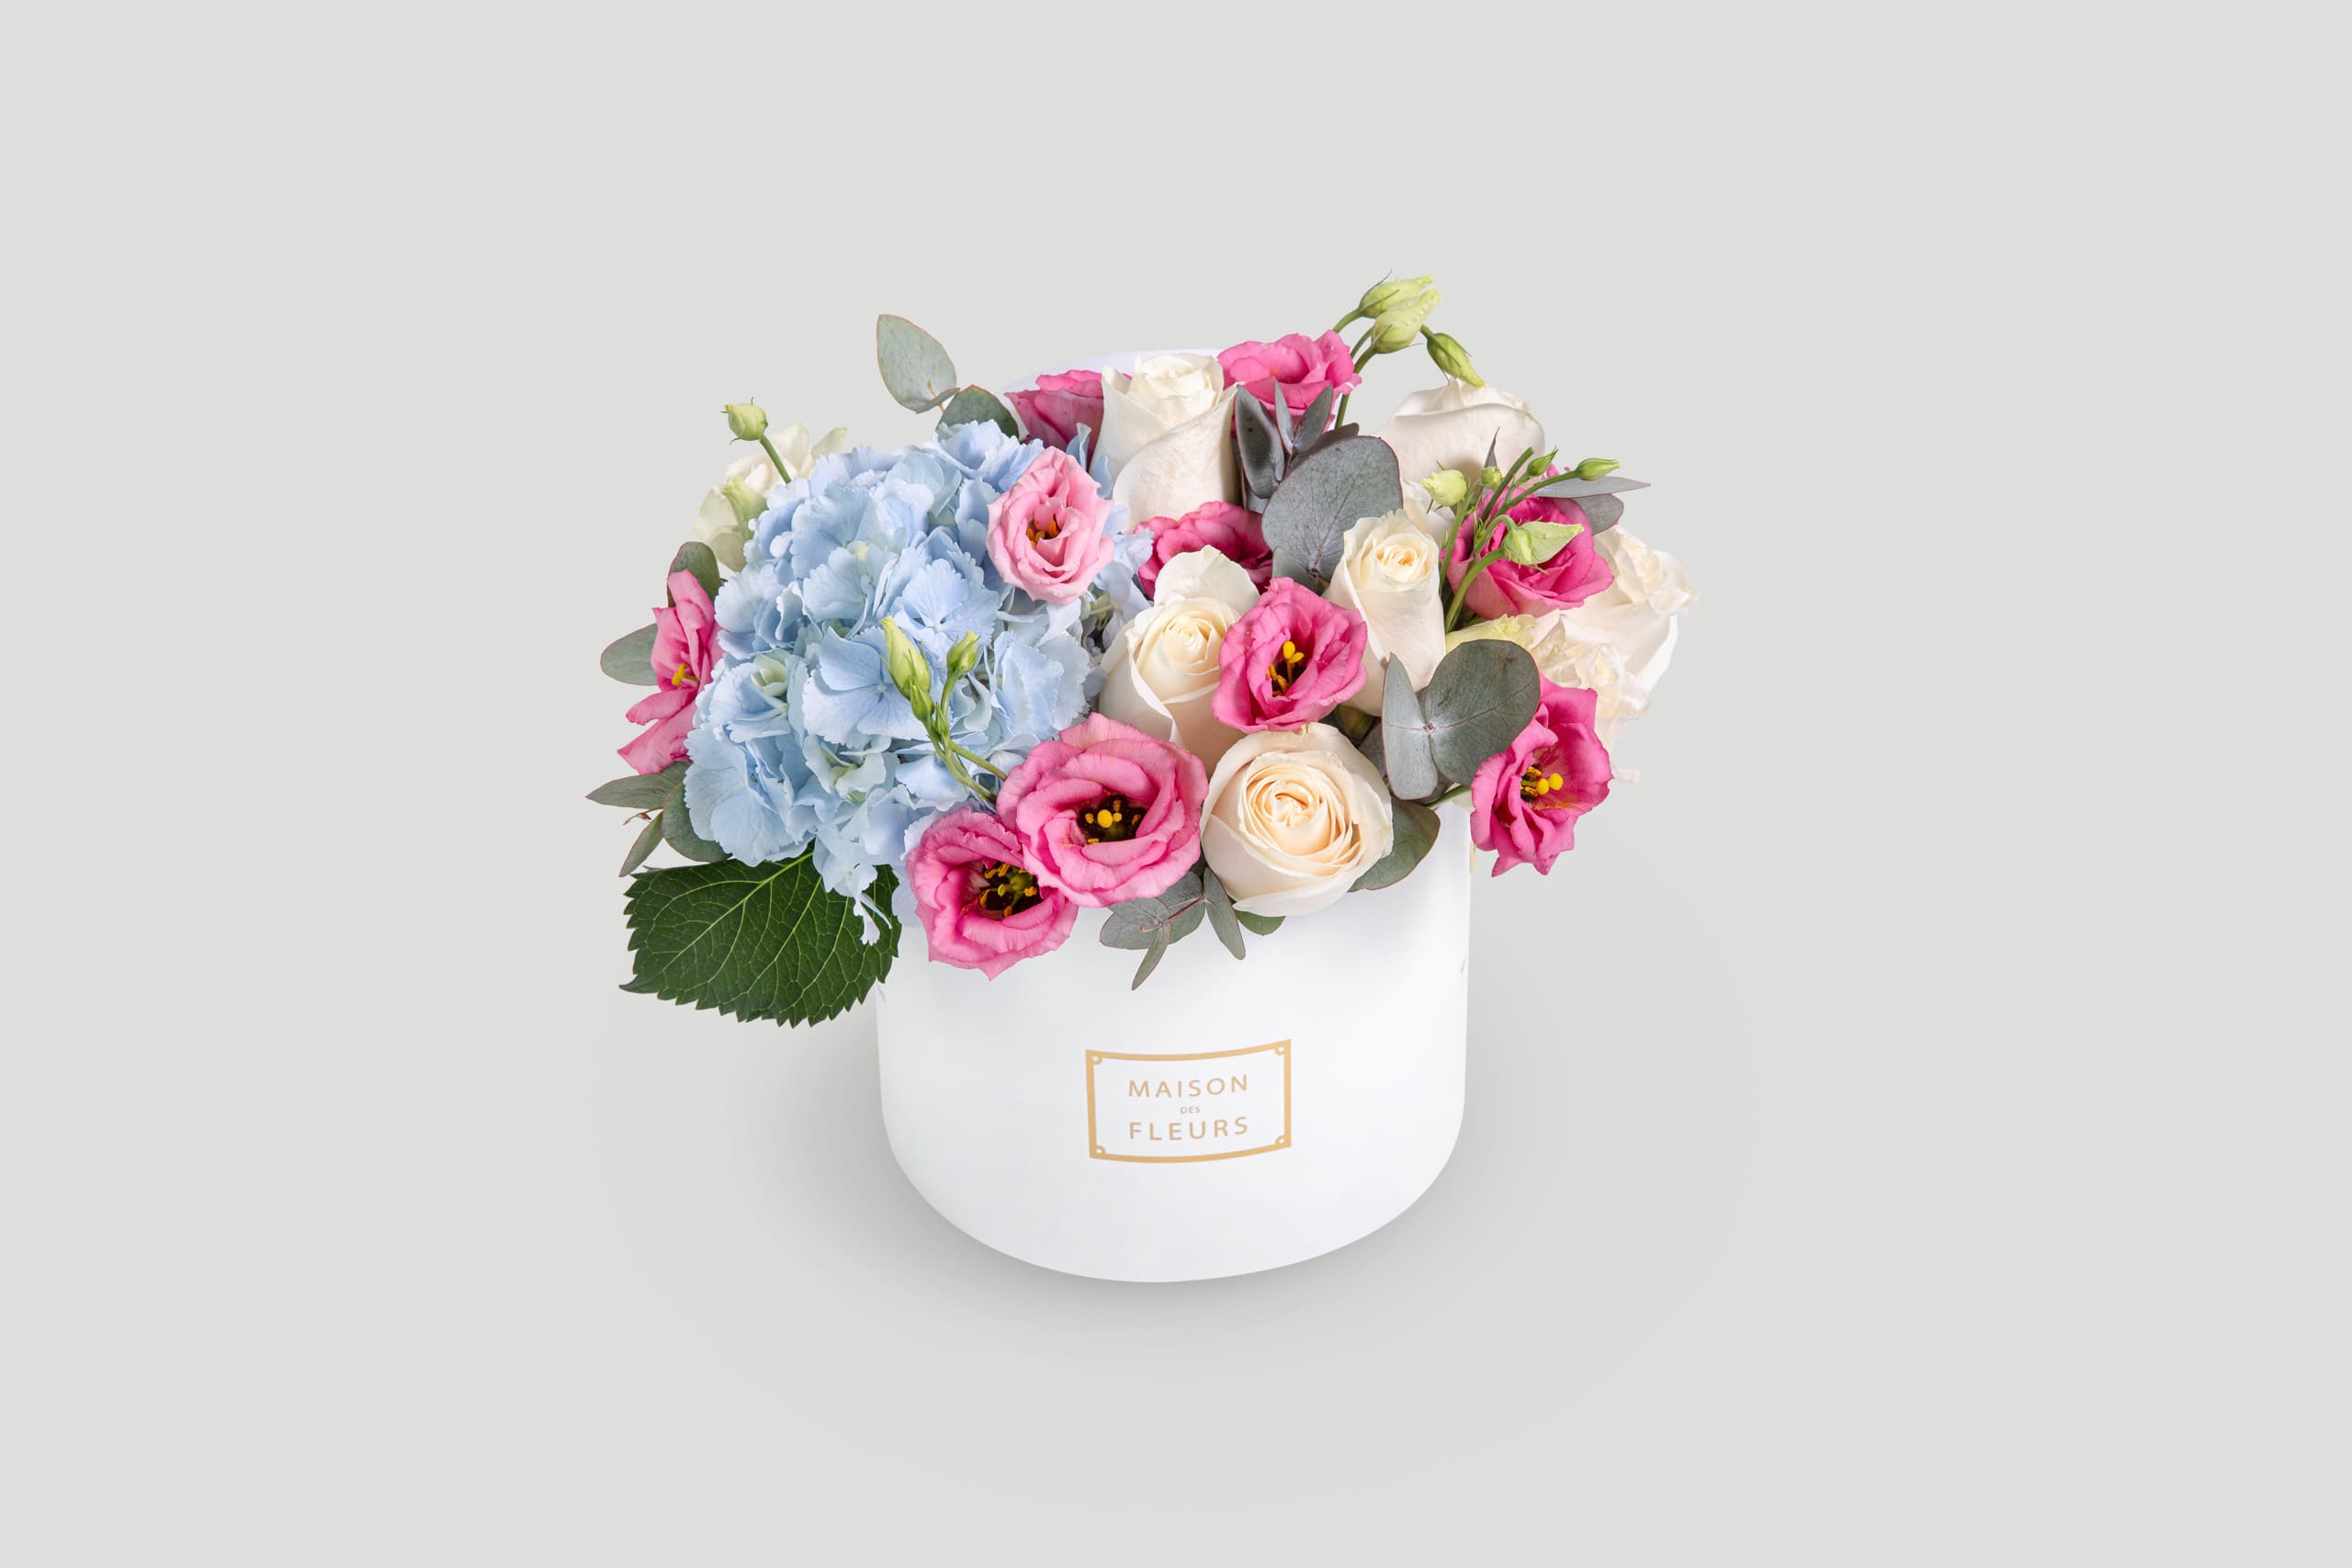 Mix Flower Arrangement in a box